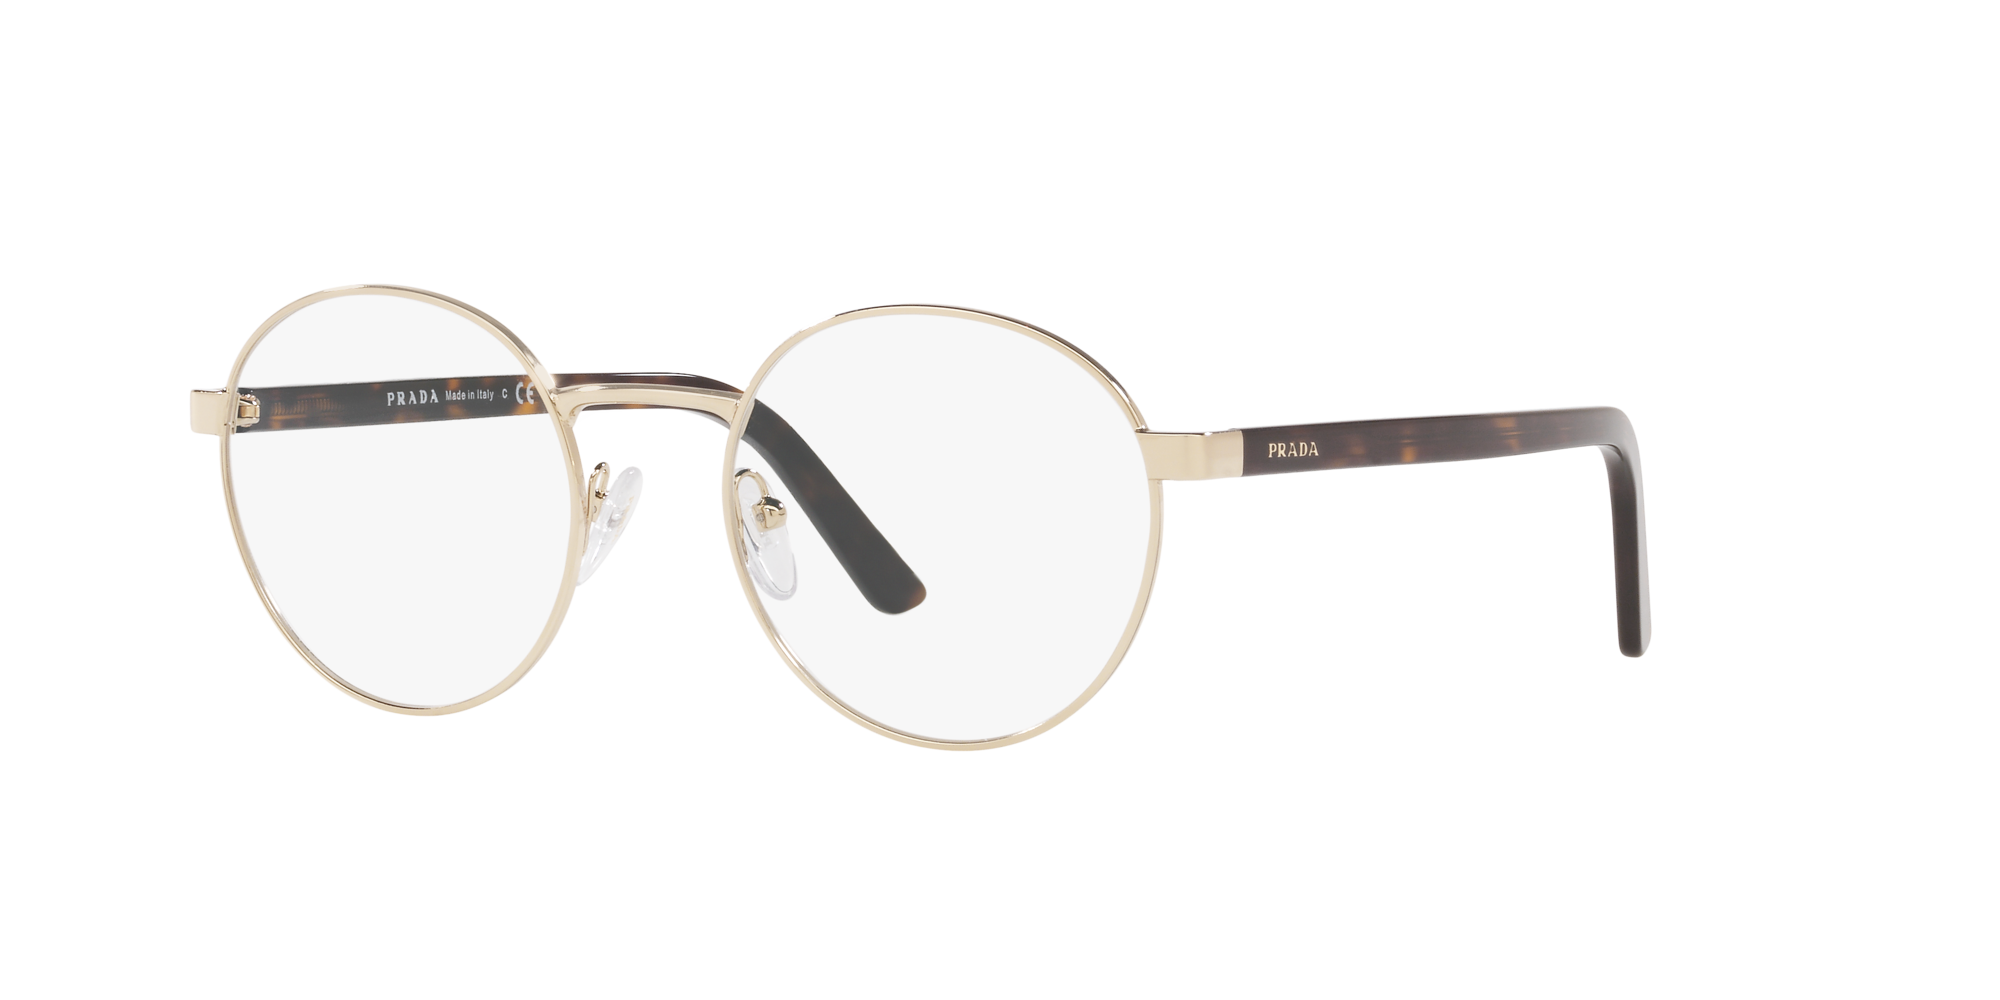 prada frames lenscrafters